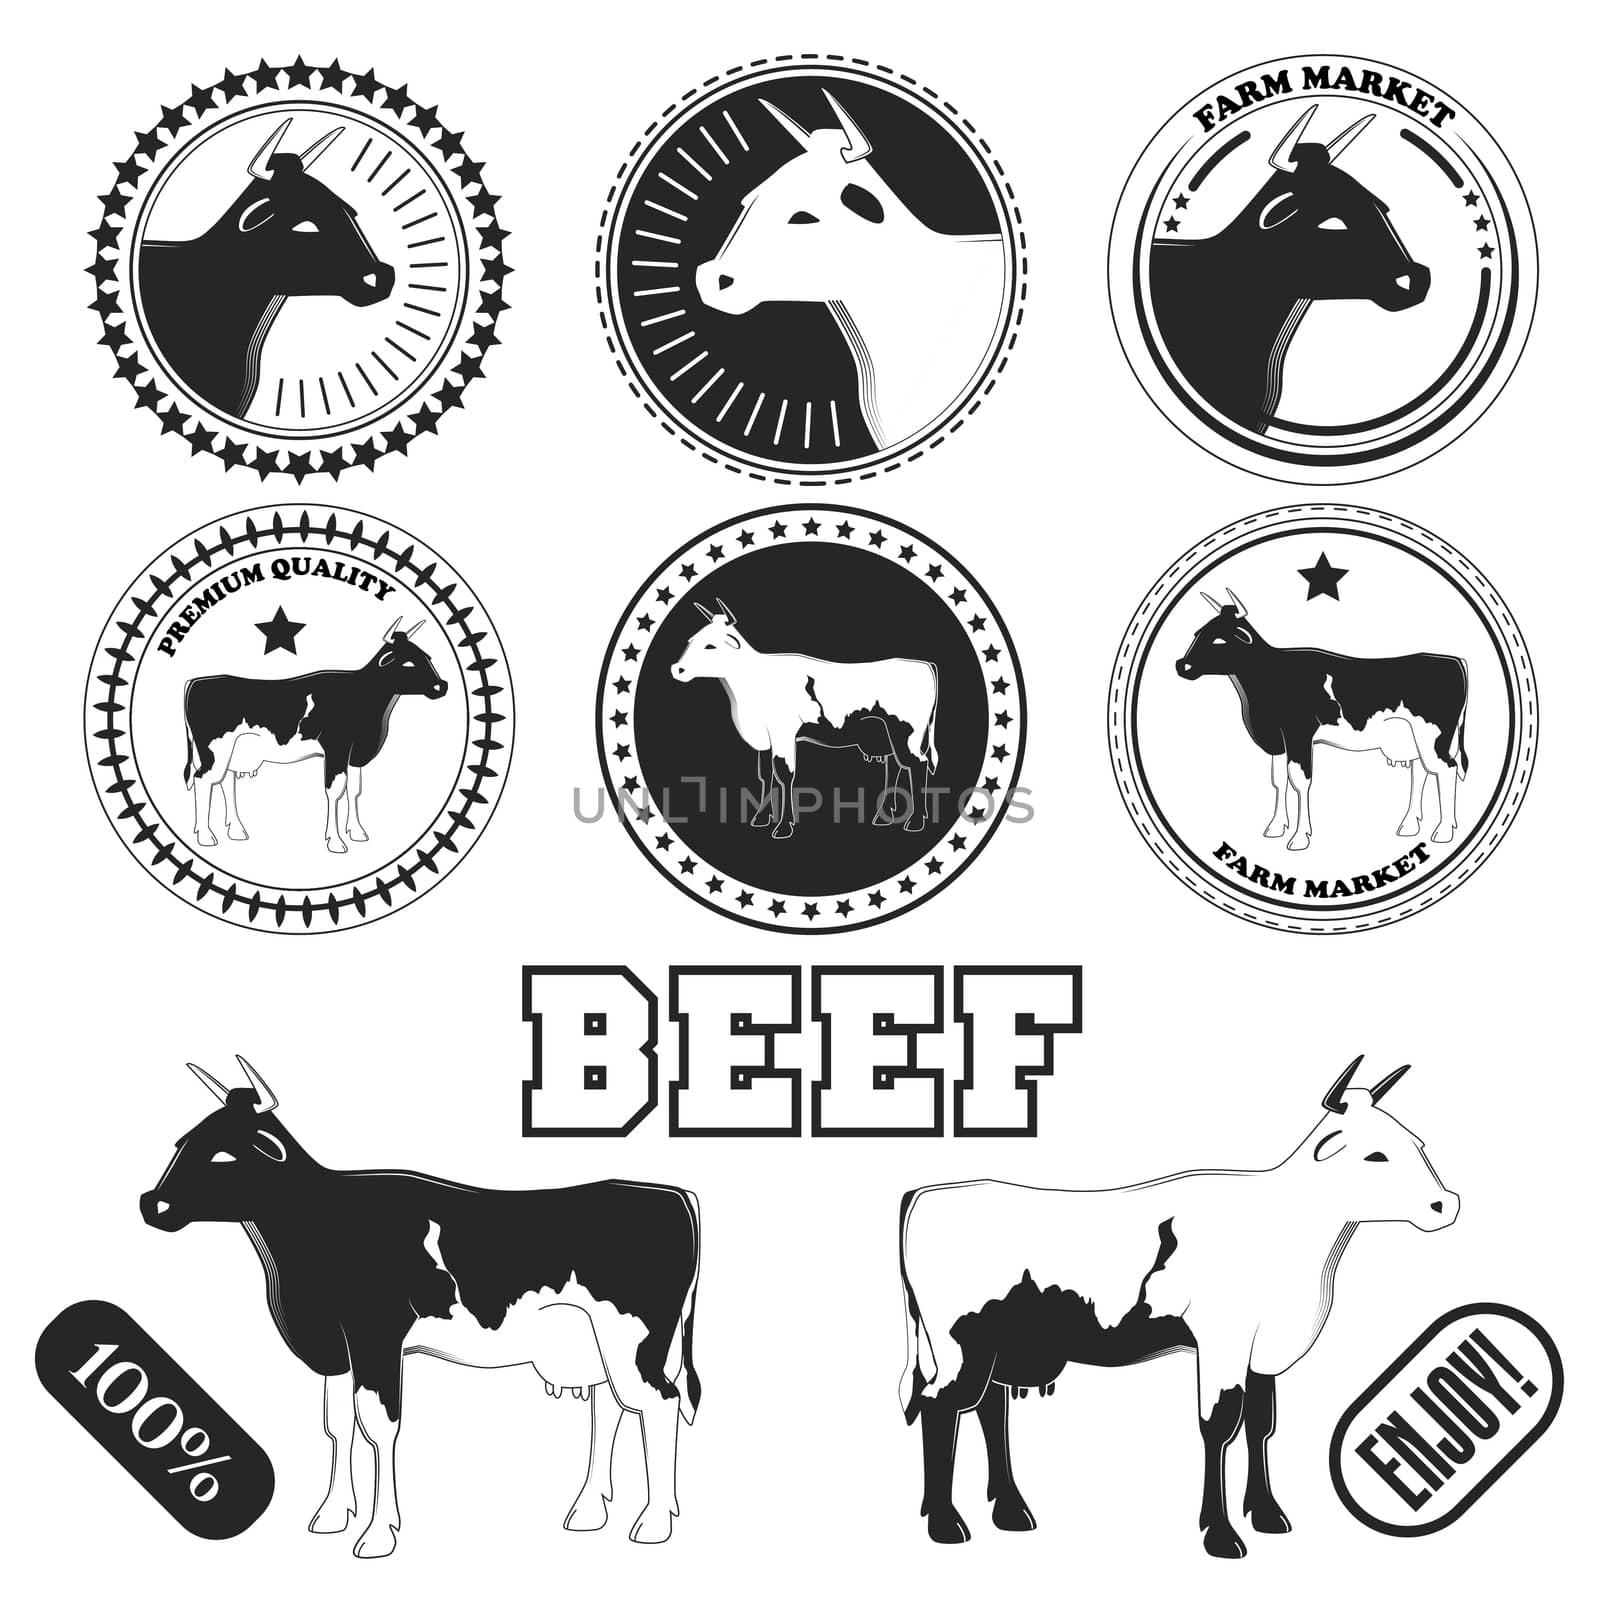 Set of premium beef labels, badges and design elements. illustration